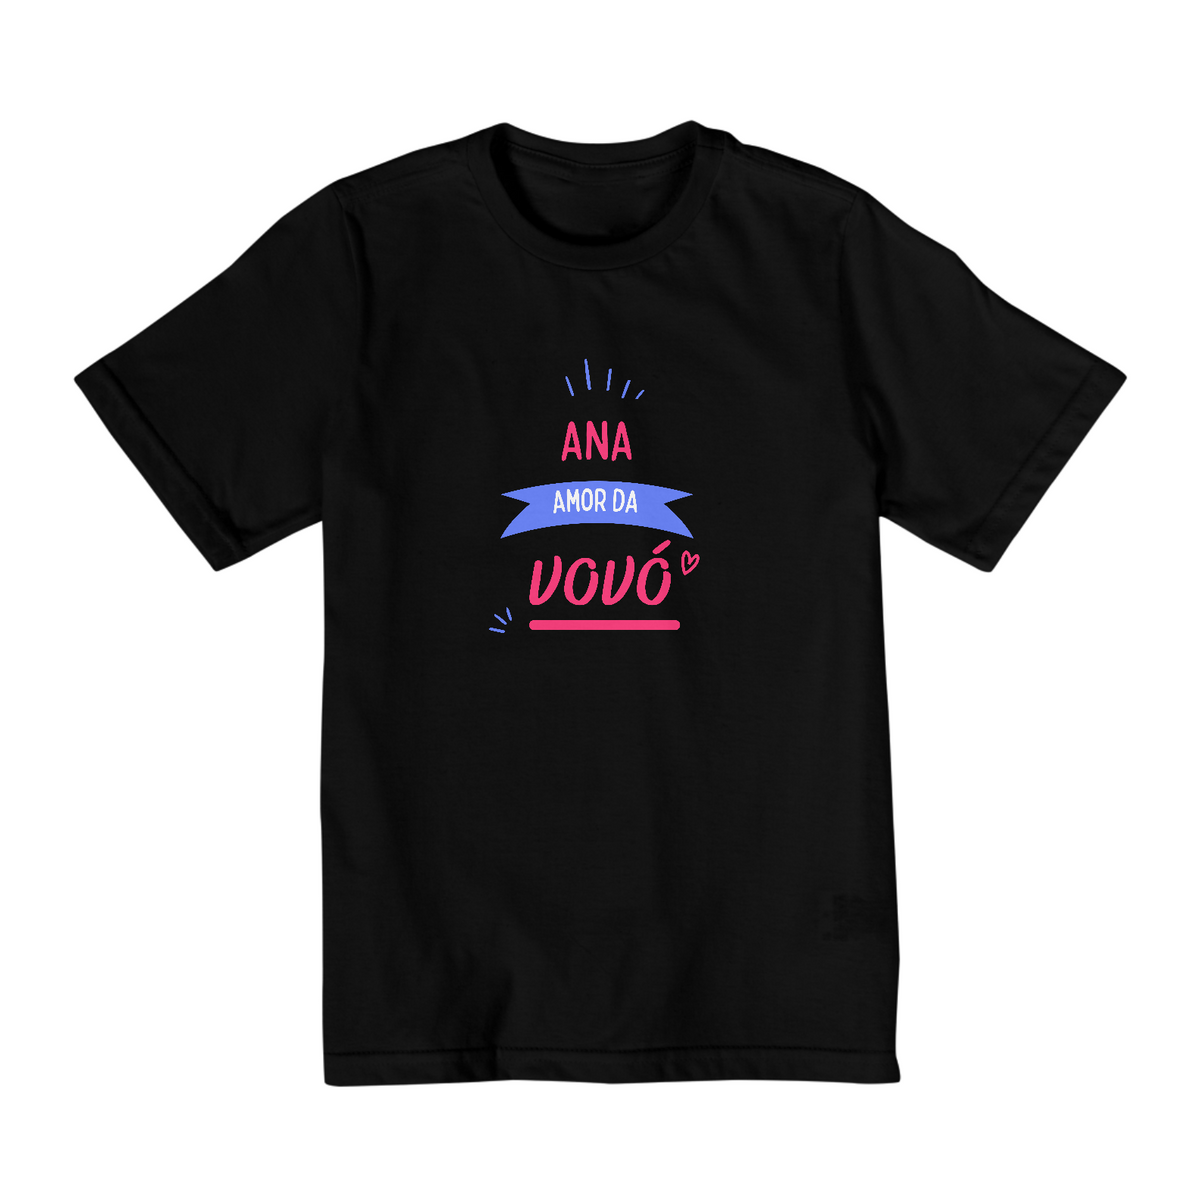 Nome do produto: T-Shirt Encomenda - Ana Amor da Vovó